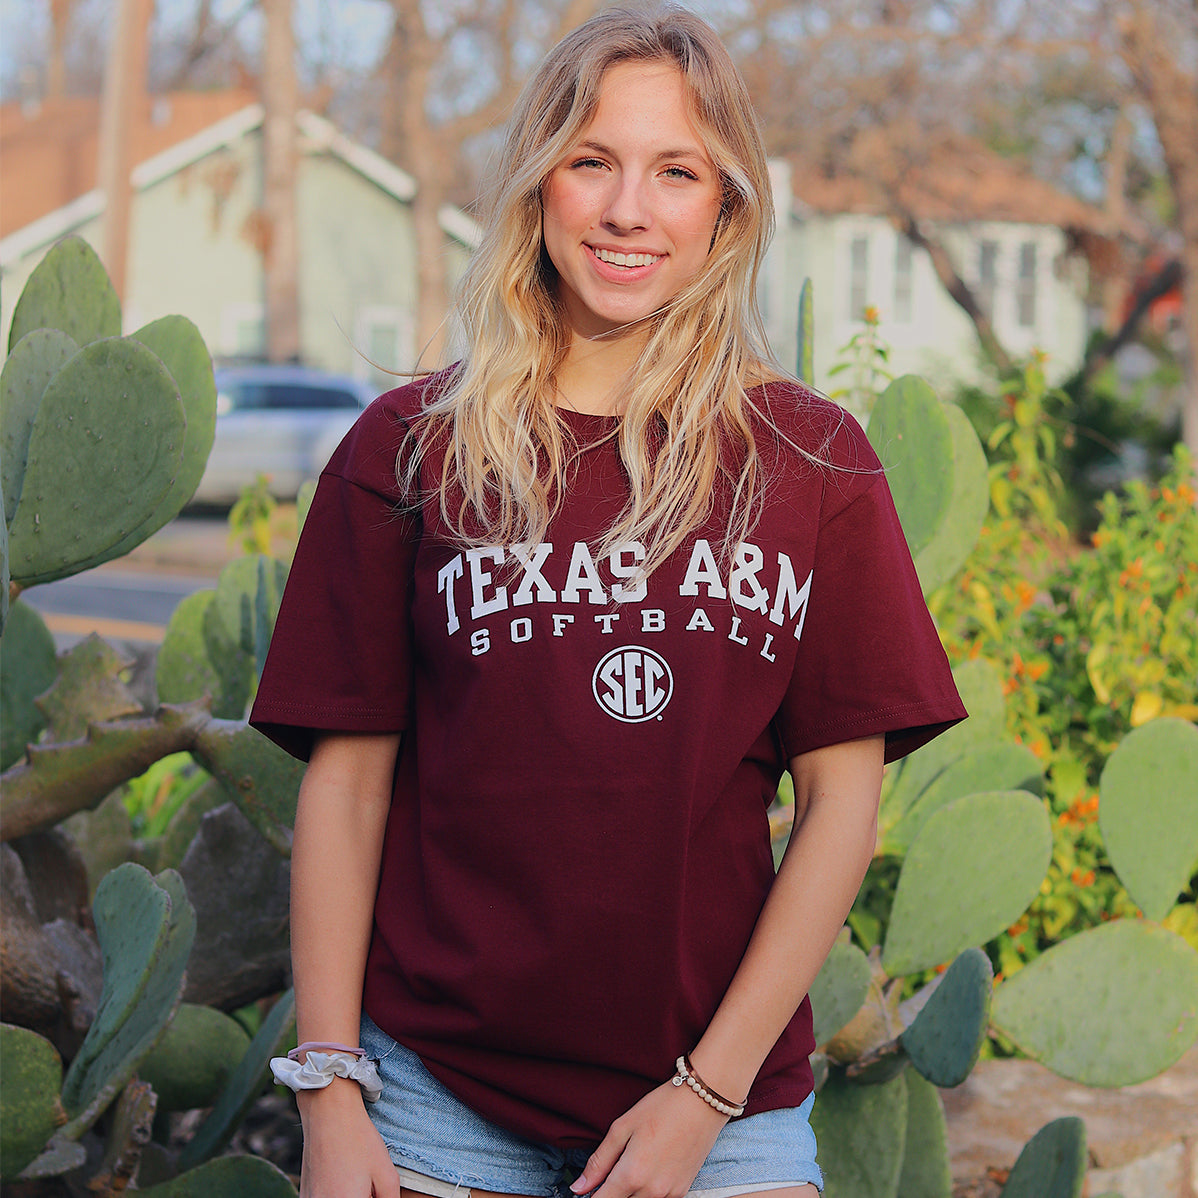 Texas A&M Champion Softball SEC T-Shirt